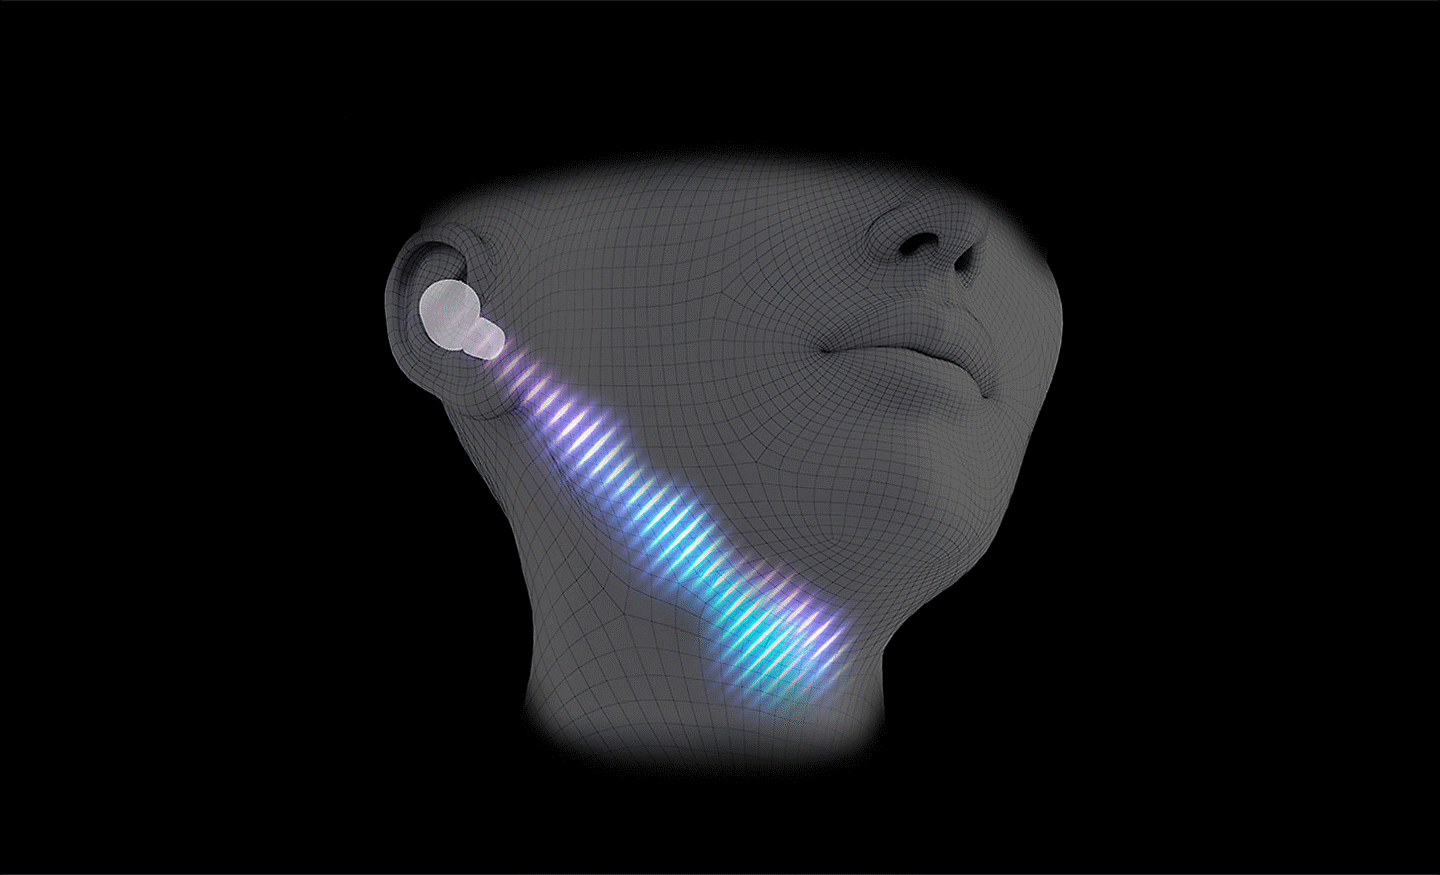 Imagen generada por computadora de una cabeza con audífonos puestos y una línea diagonal de onda de sonido desde su oído a su garganta